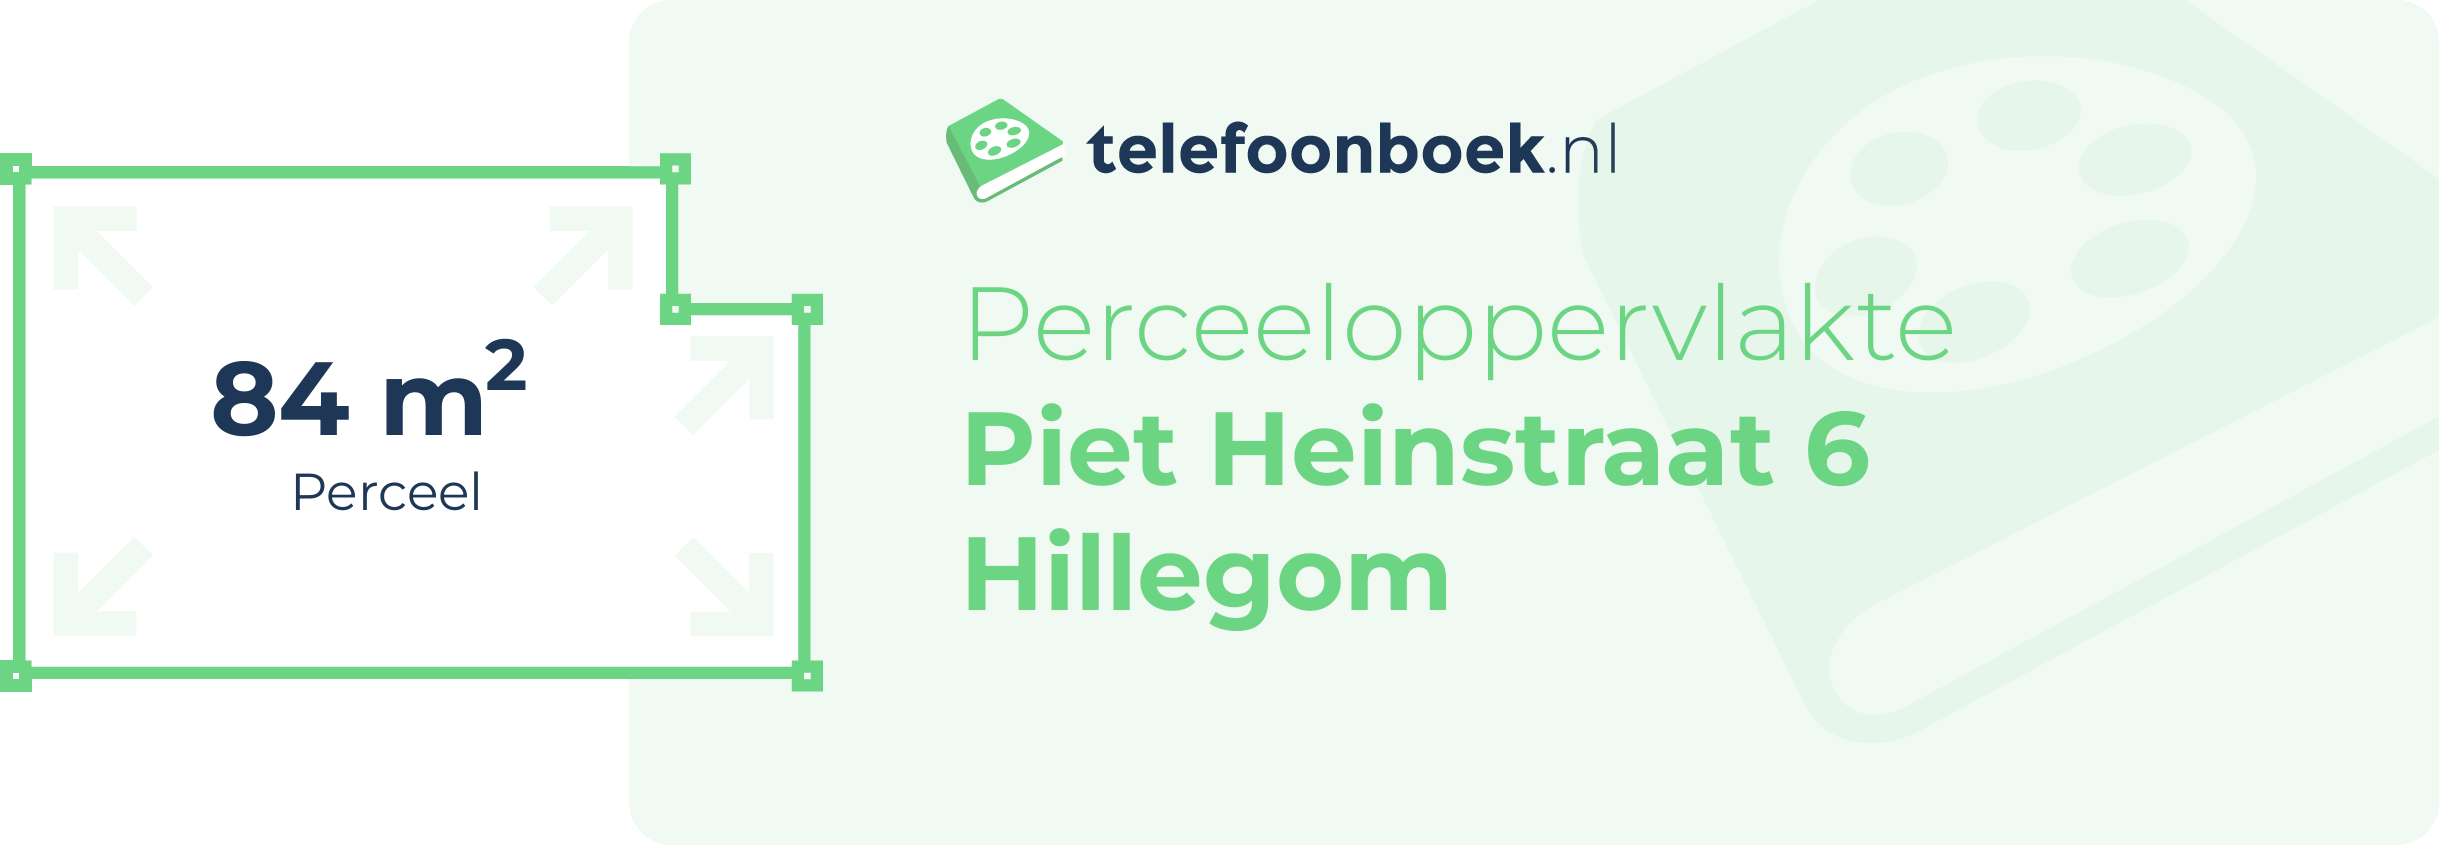 Perceeloppervlakte Piet Heinstraat 6 Hillegom